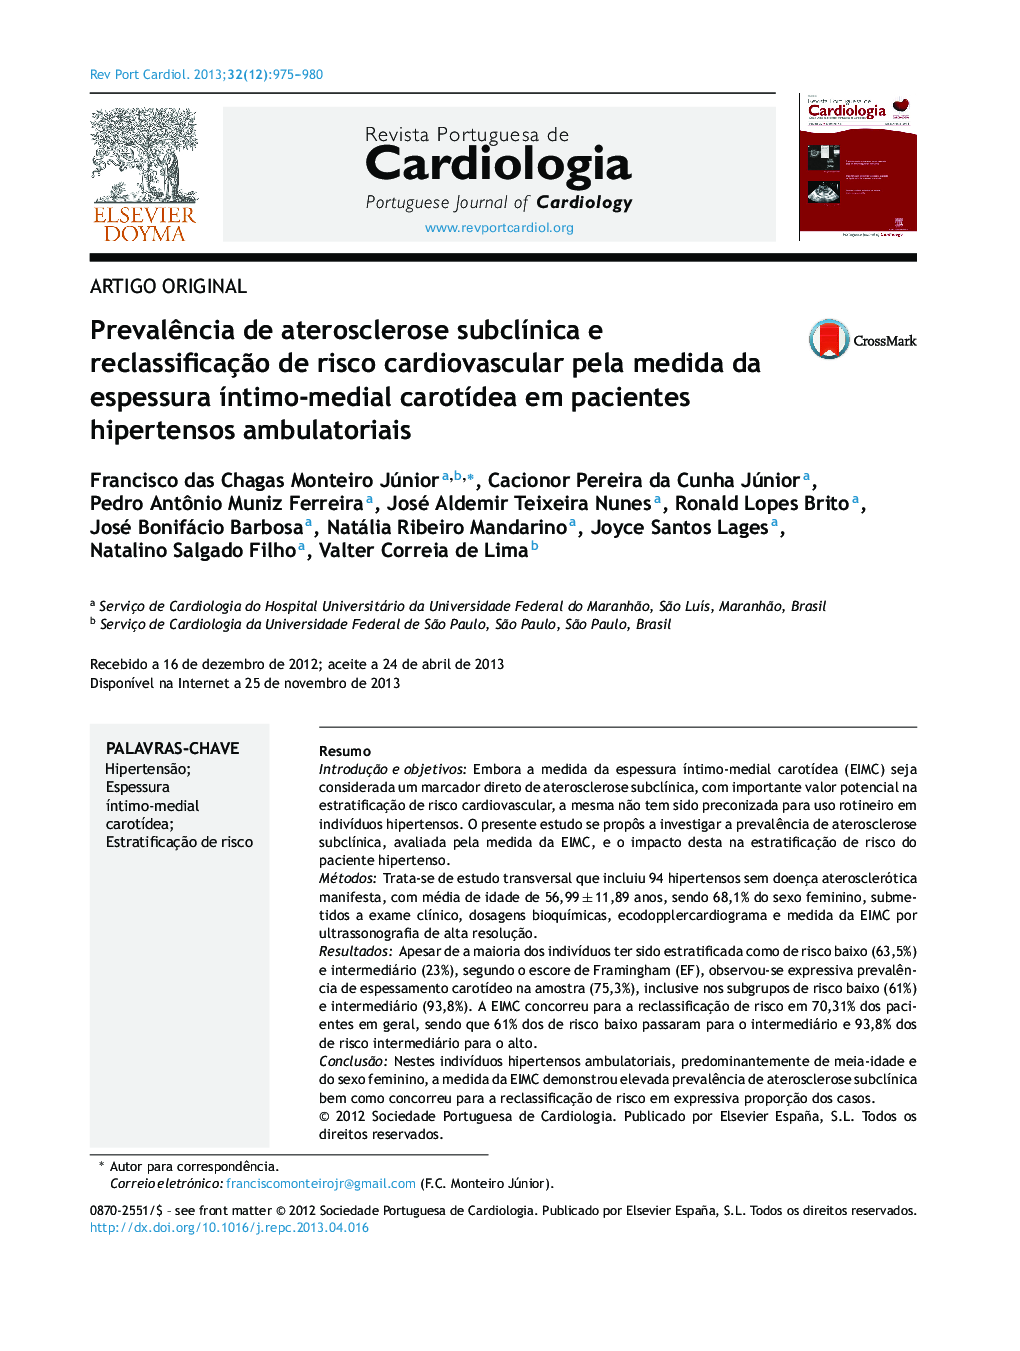 Prevalência de aterosclerose subclínica e reclassificação de risco cardiovascular pela medida da espessura íntimo-medial carotídea em pacientes hipertensos ambulatoriais